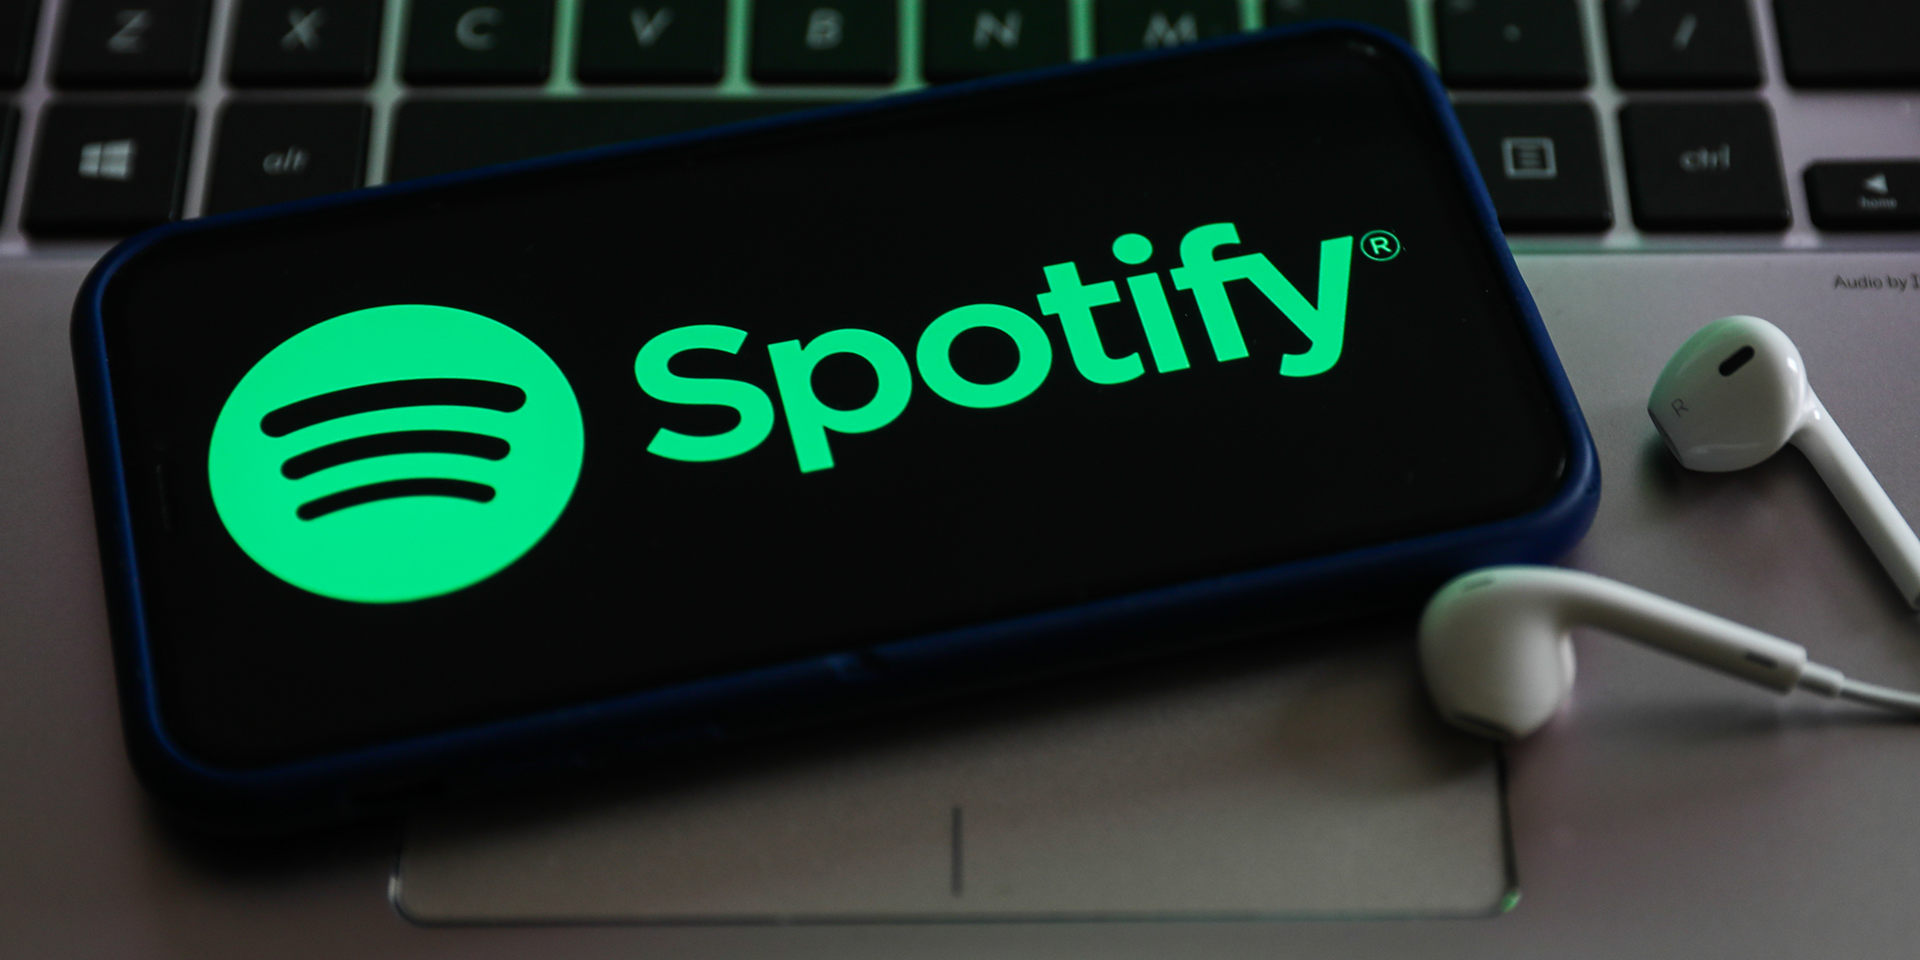 Los audiolibros ya están disponibles en Spotify